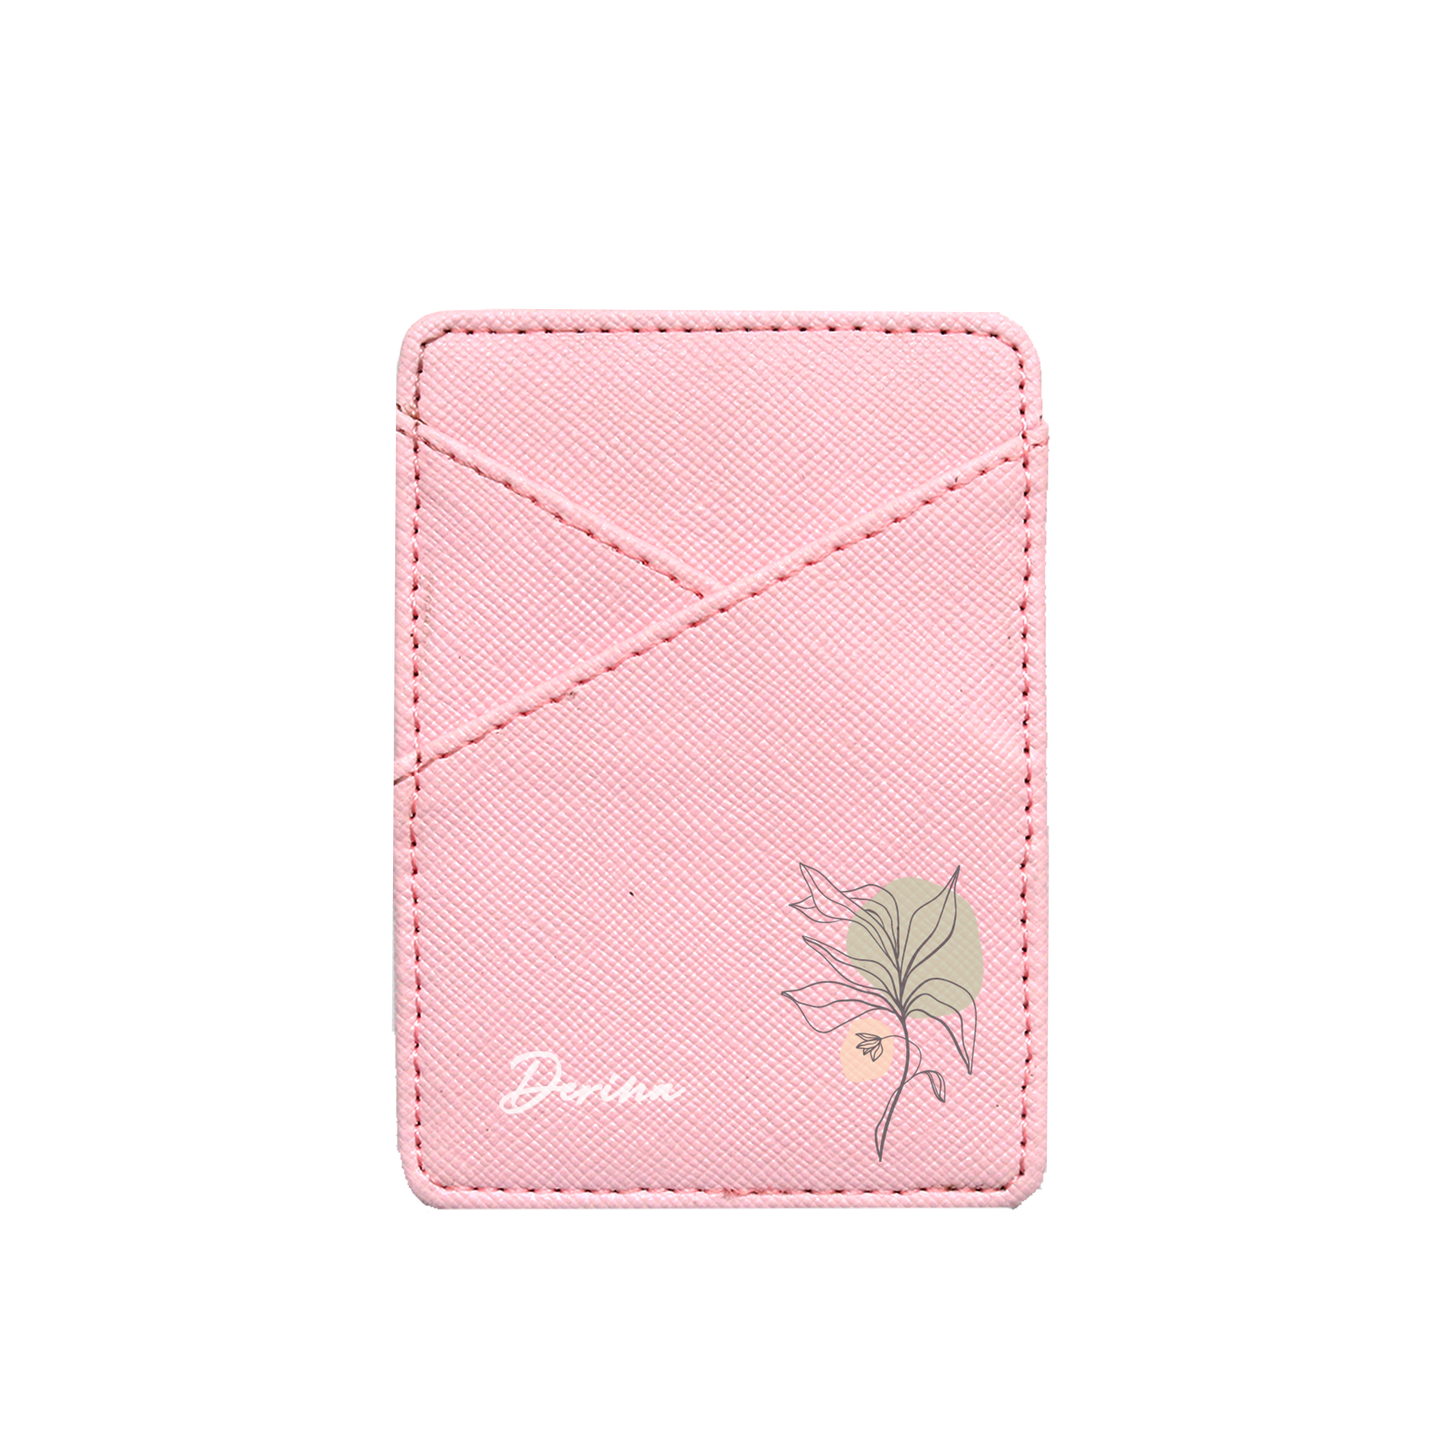 Vegan Leather Pocket Wallet - Sketchy Flower 3.0